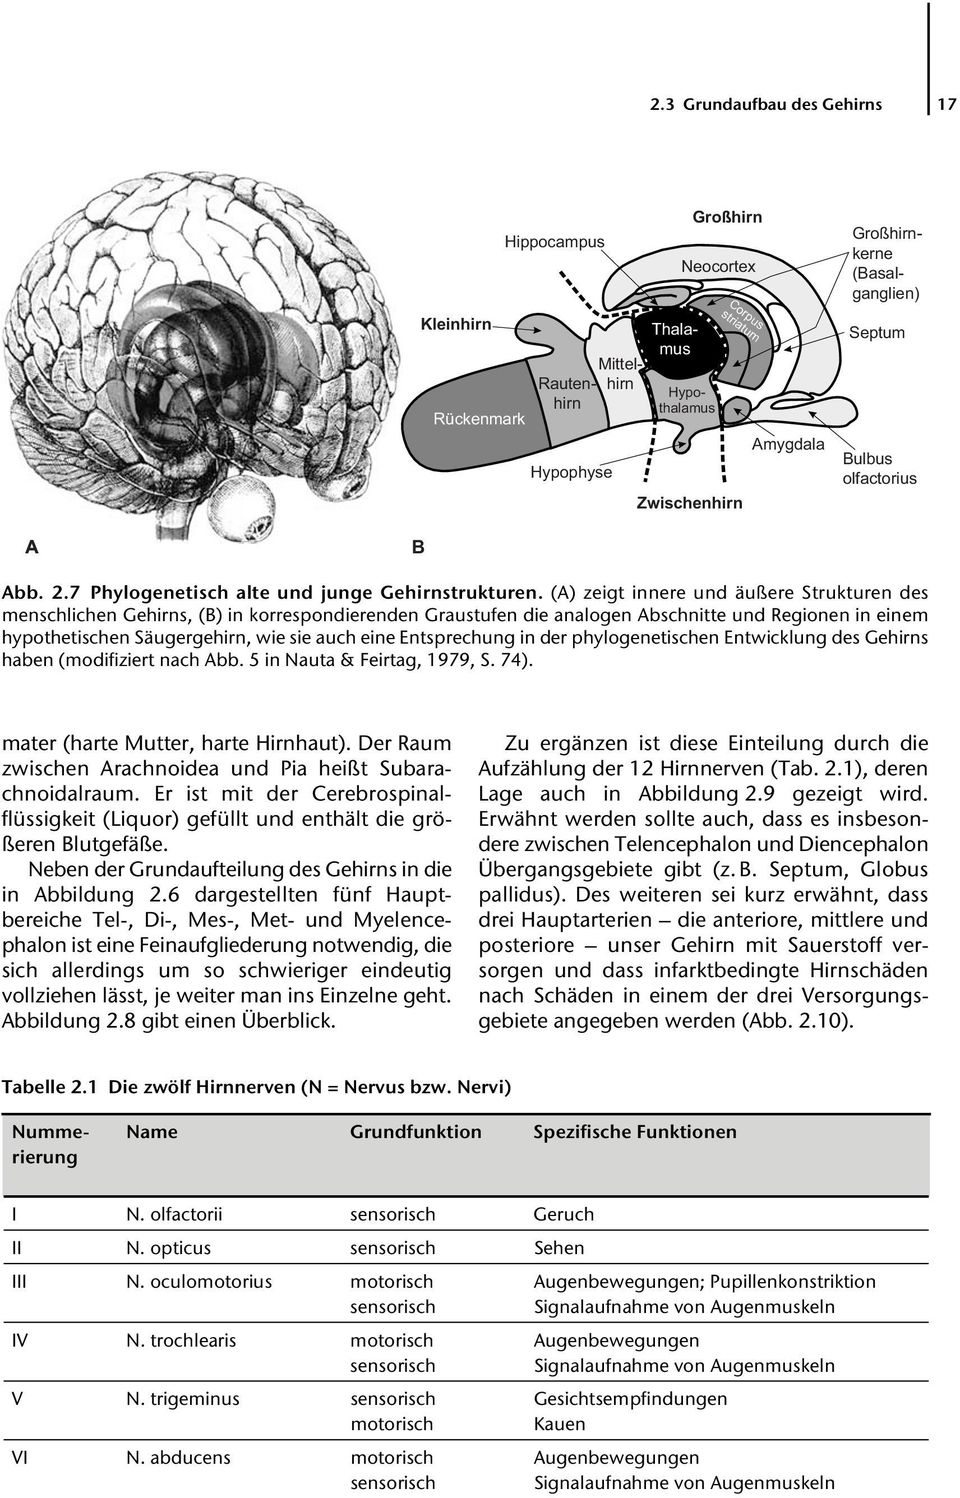 (A) zeigt innere und äußere Strukturen des menschlichen Gehirns, (B) in korrespondierenden Graustufen die analogen Abschnitte und Regionen in einem hypothetischen Säugergehirn, wie sie auch eine